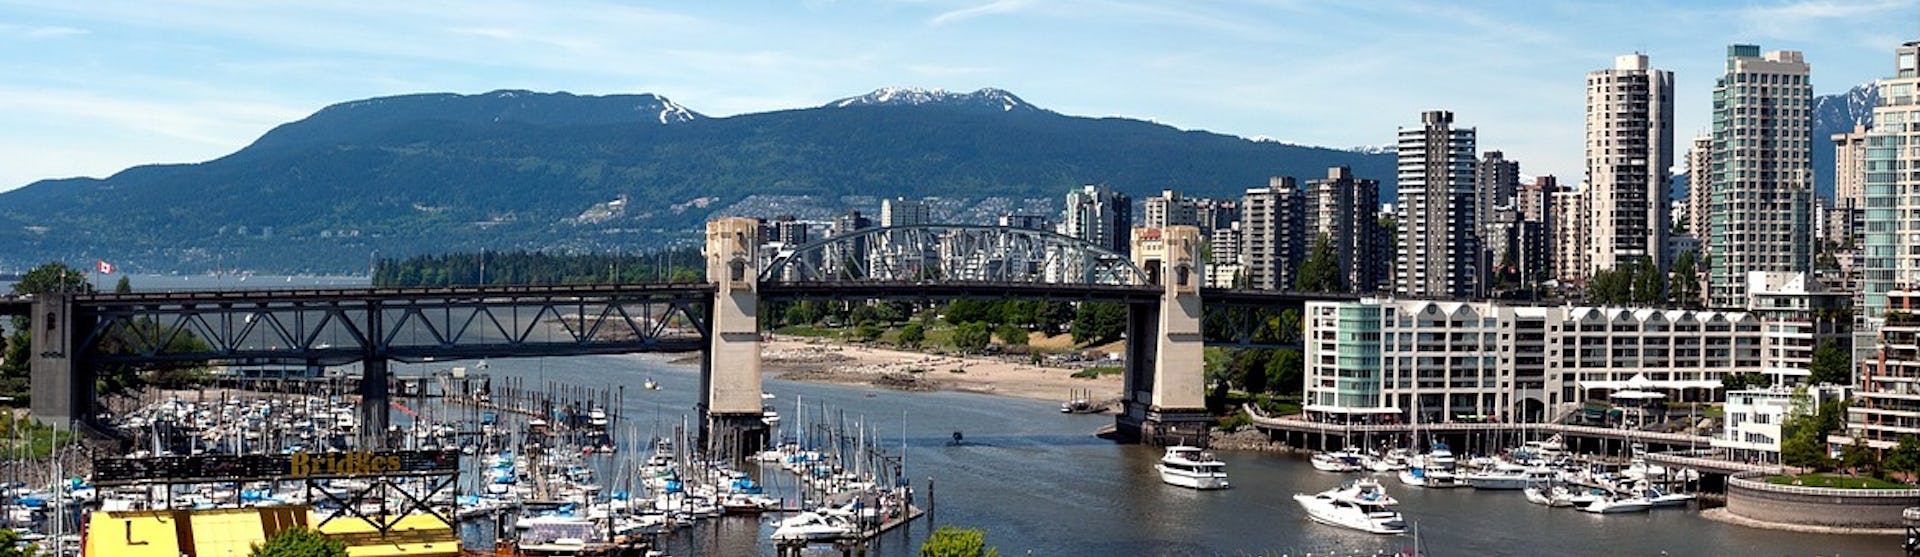 En mindre hamn i Vancouver med stadens skyskrapor till höger i bild och bergen som tornar upp sig.